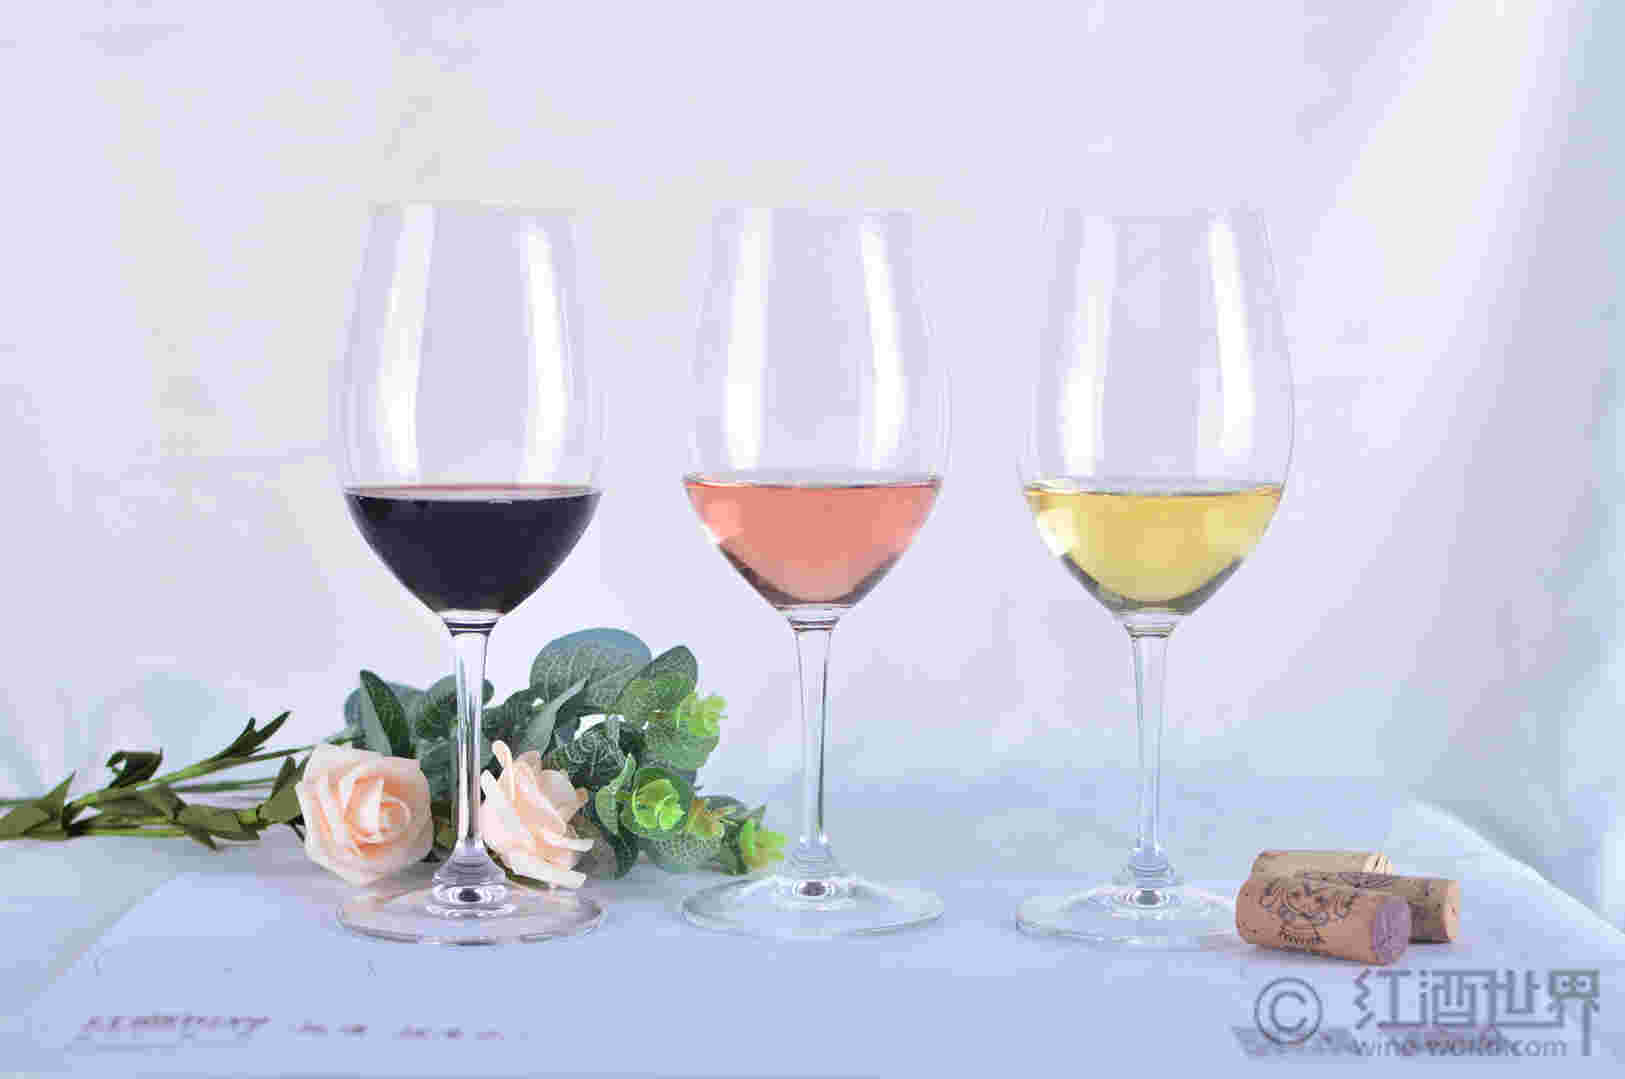 教你如何品味葡萄酒的复杂性